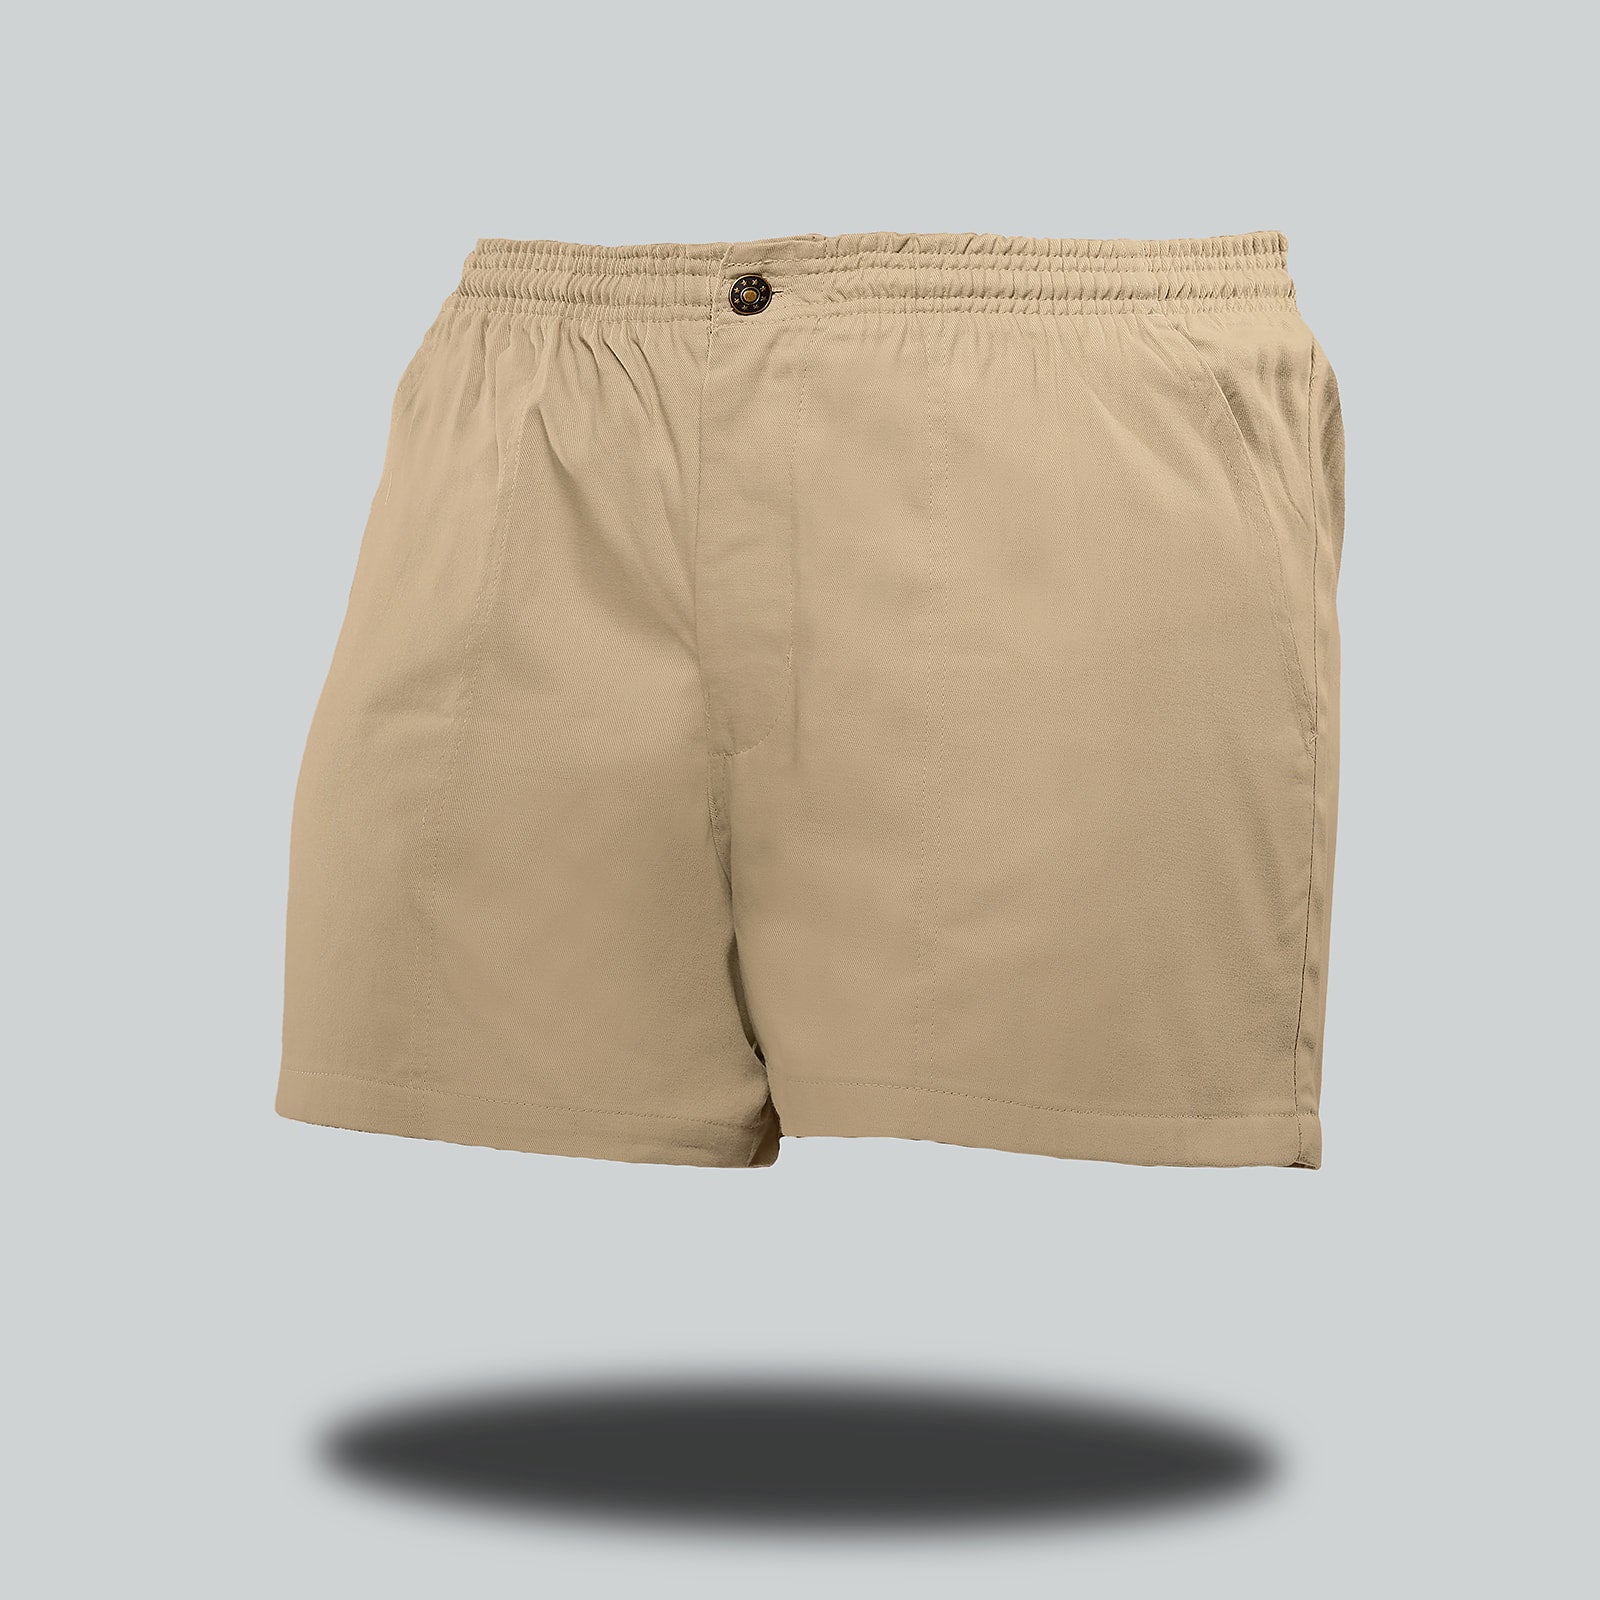 Kruger Boxer Shorts - Men's